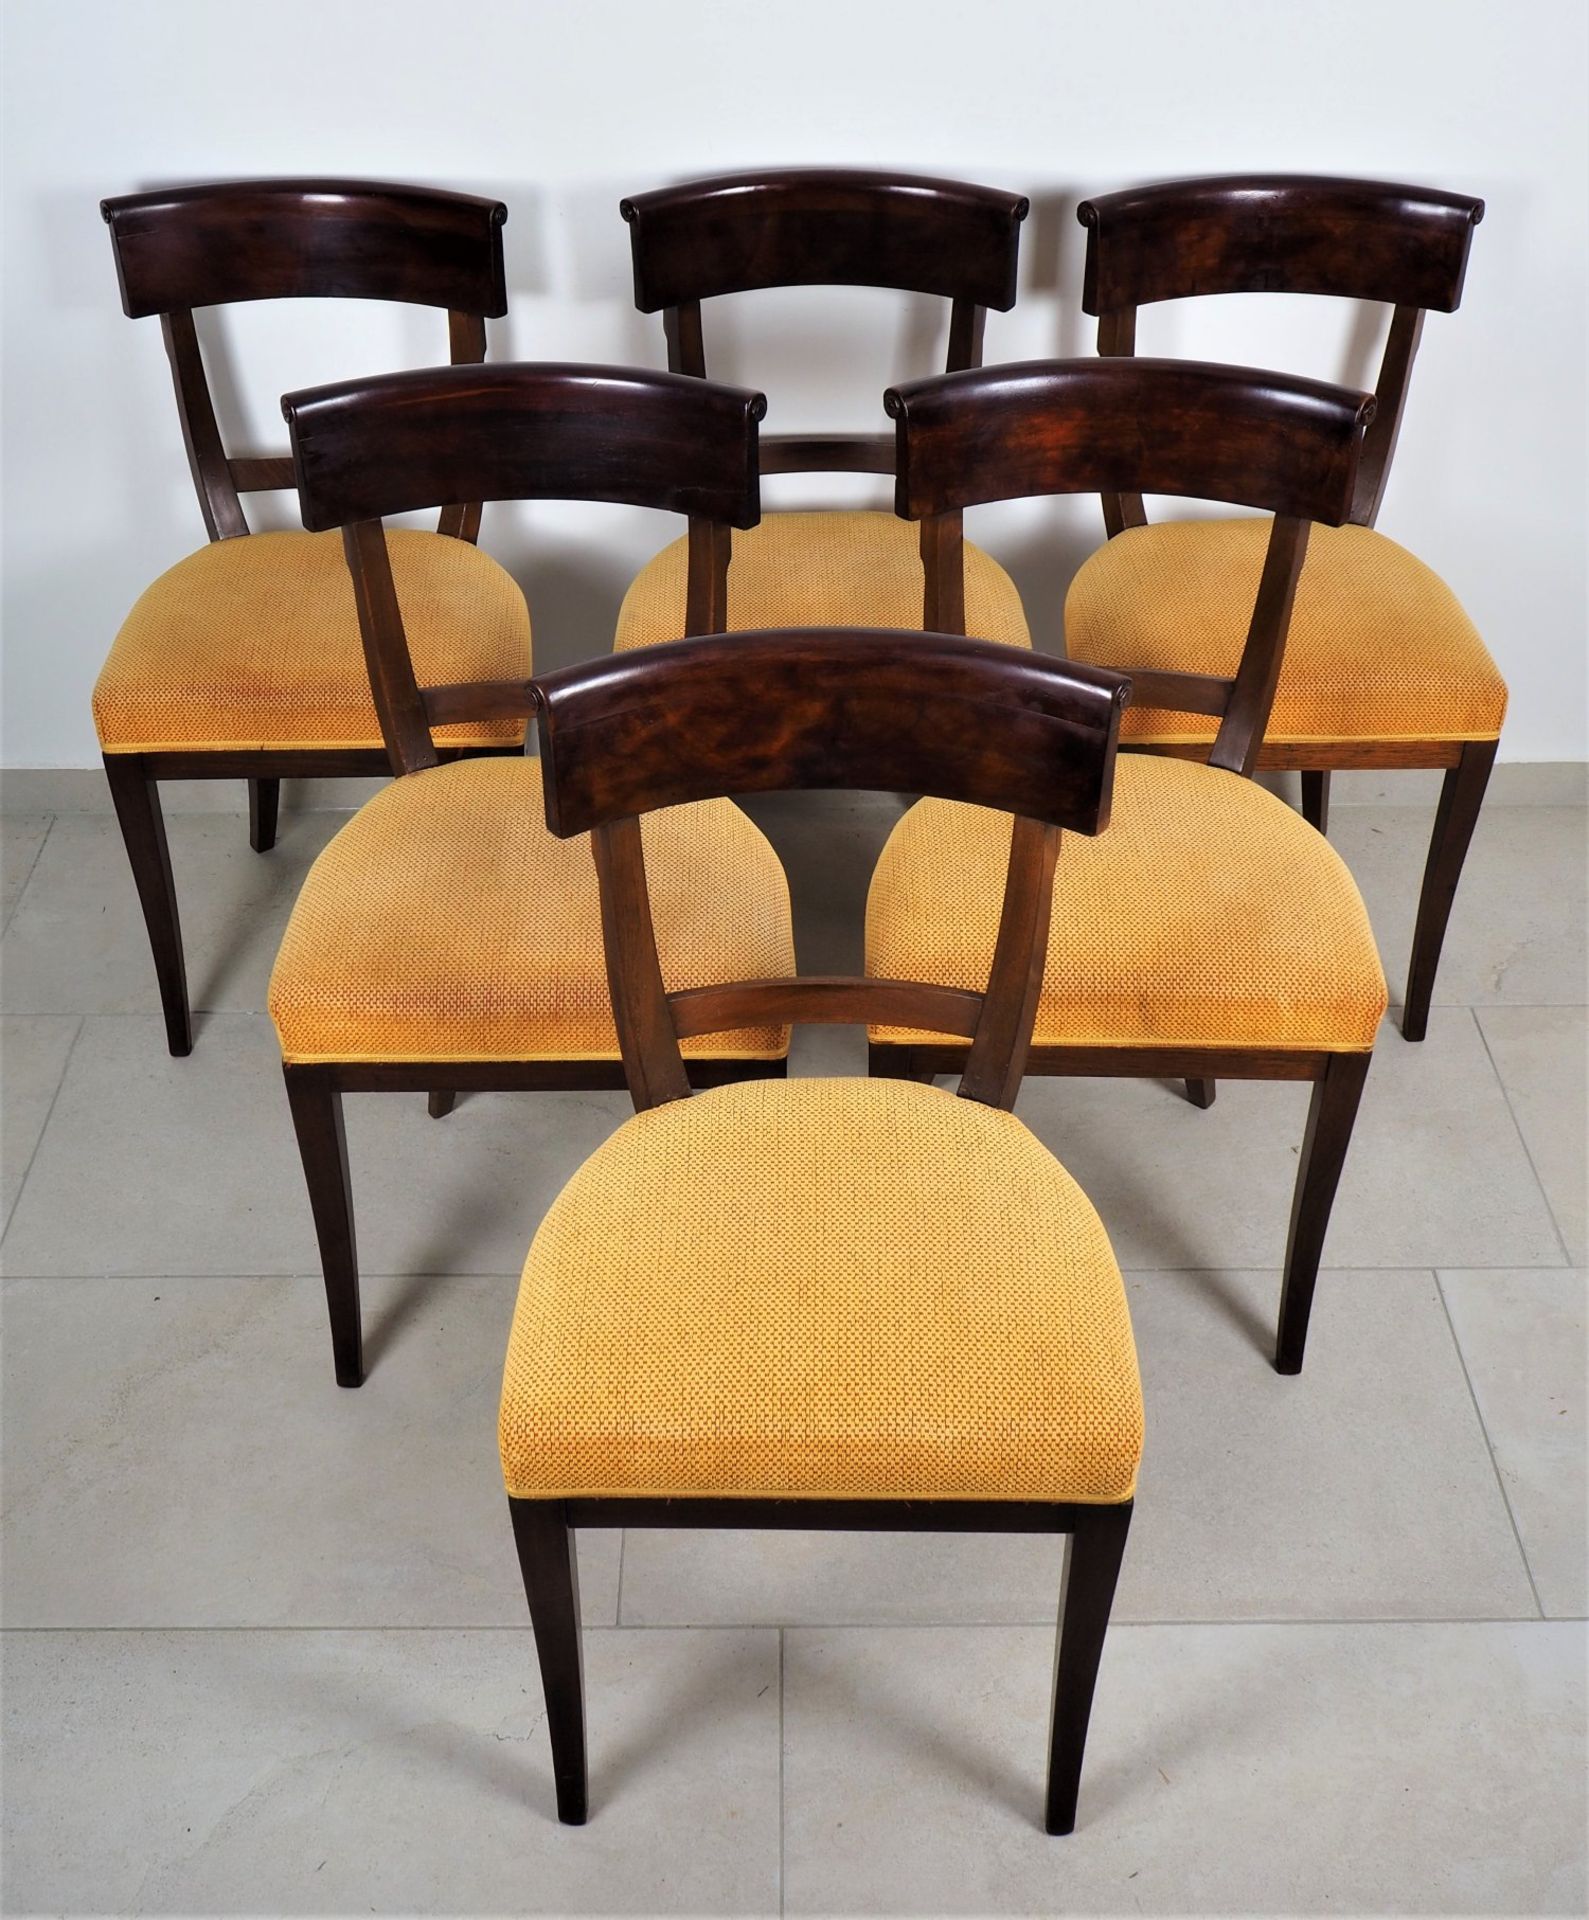 Set of 6 chairs, Biedermeier, around 1900